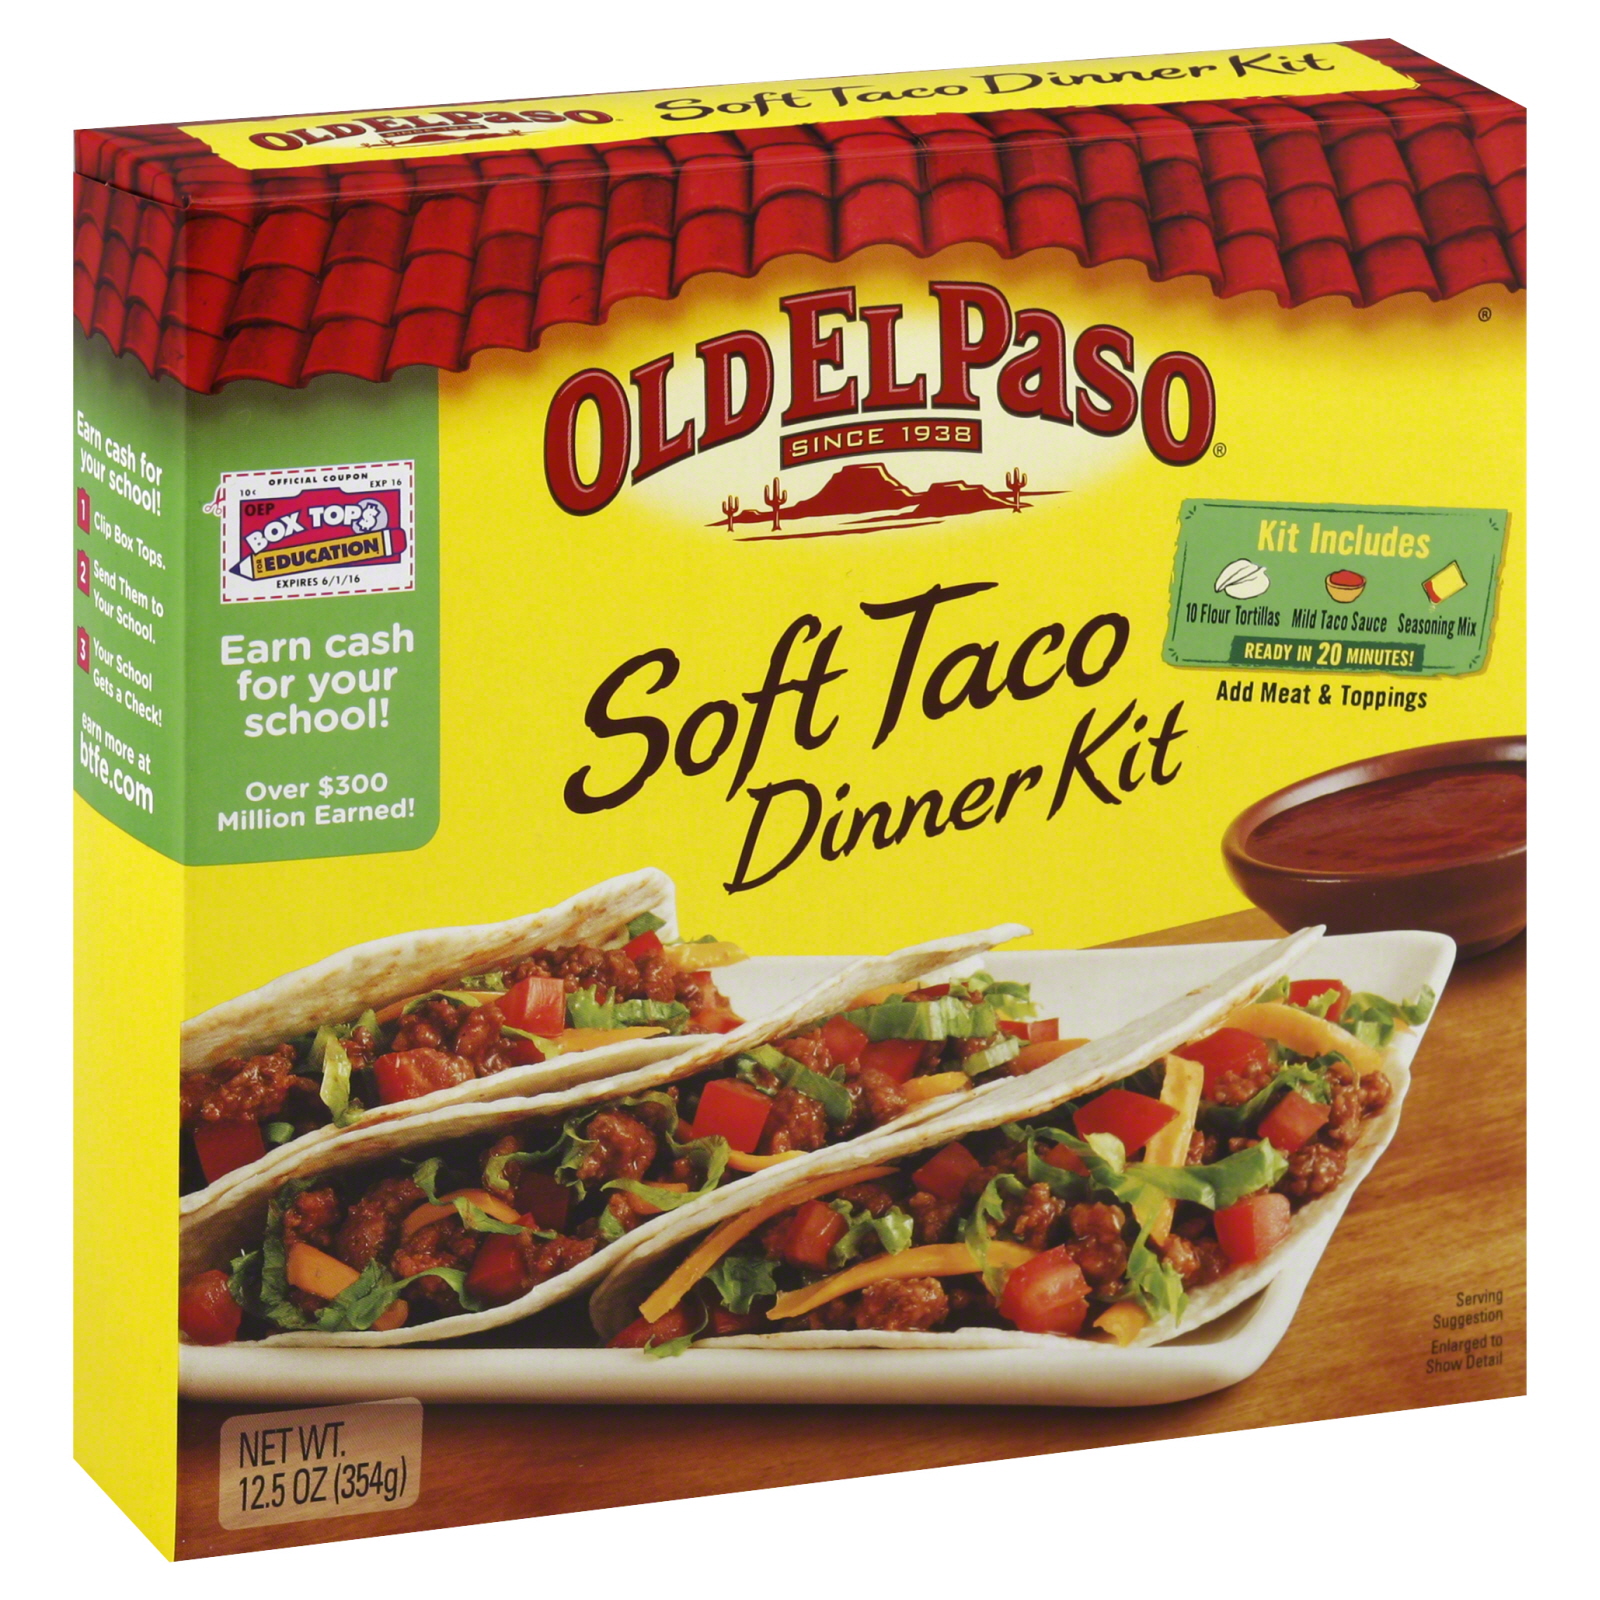 Old El Paso Dinner Kit, Soft Taco, 12.5 oz (354 g)